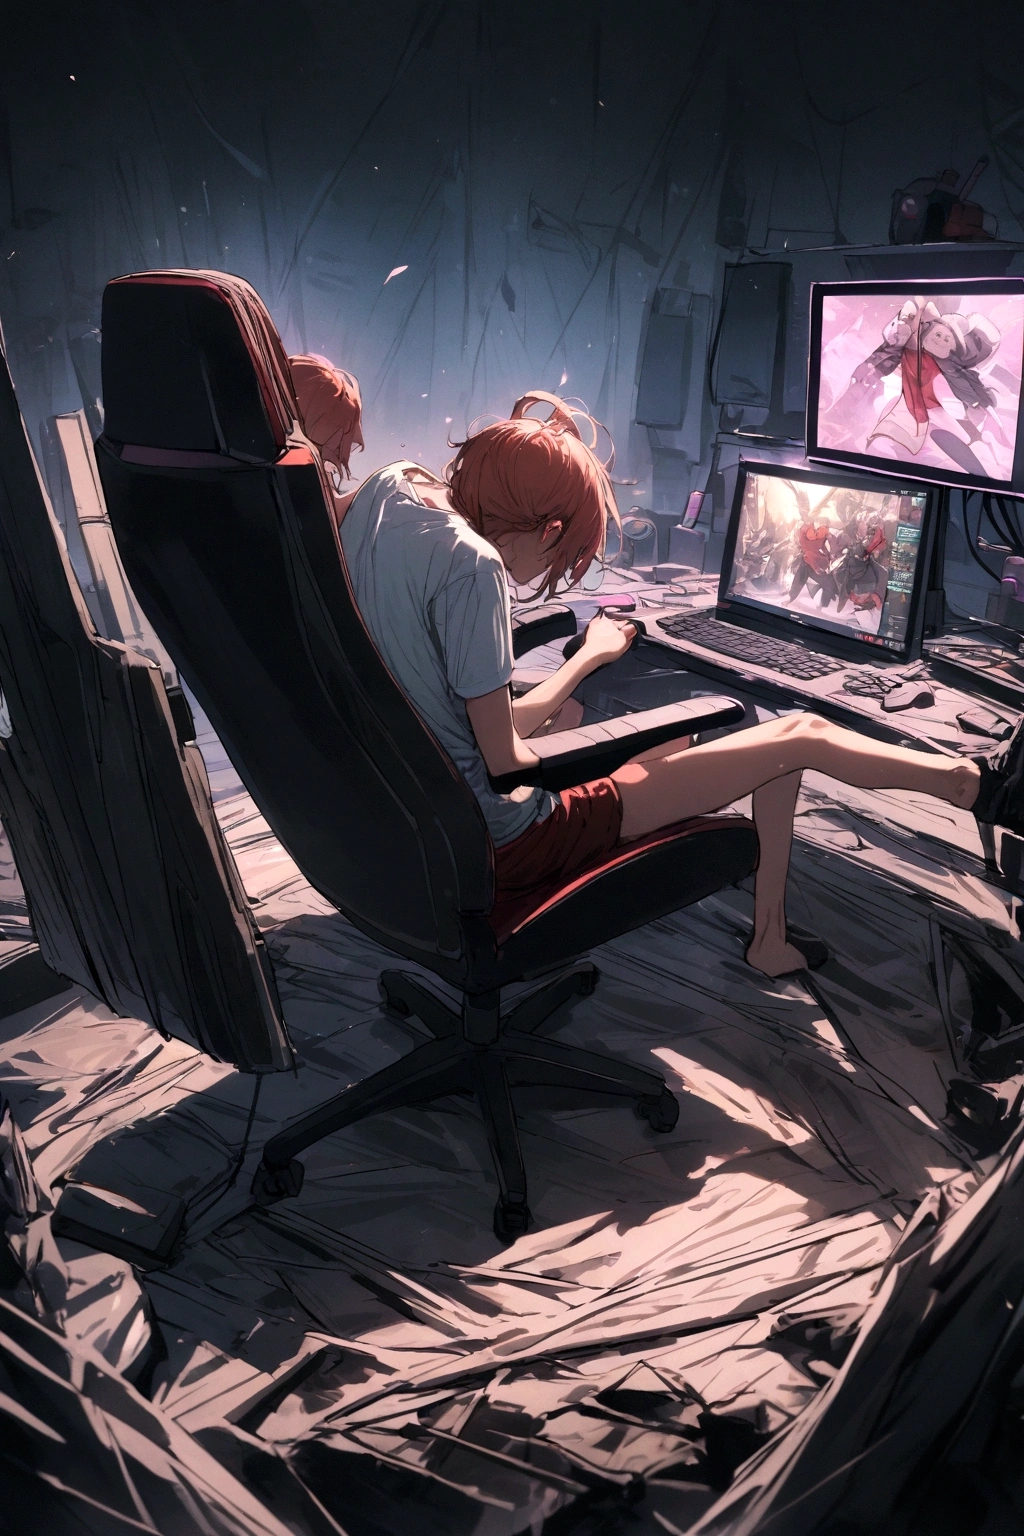 قوة,الجلوس على كرسي الألعاب,اللعب على جهاز الكمبيوتر,يرتدي قميصا مكتوبا, هارل,في المنتصف.